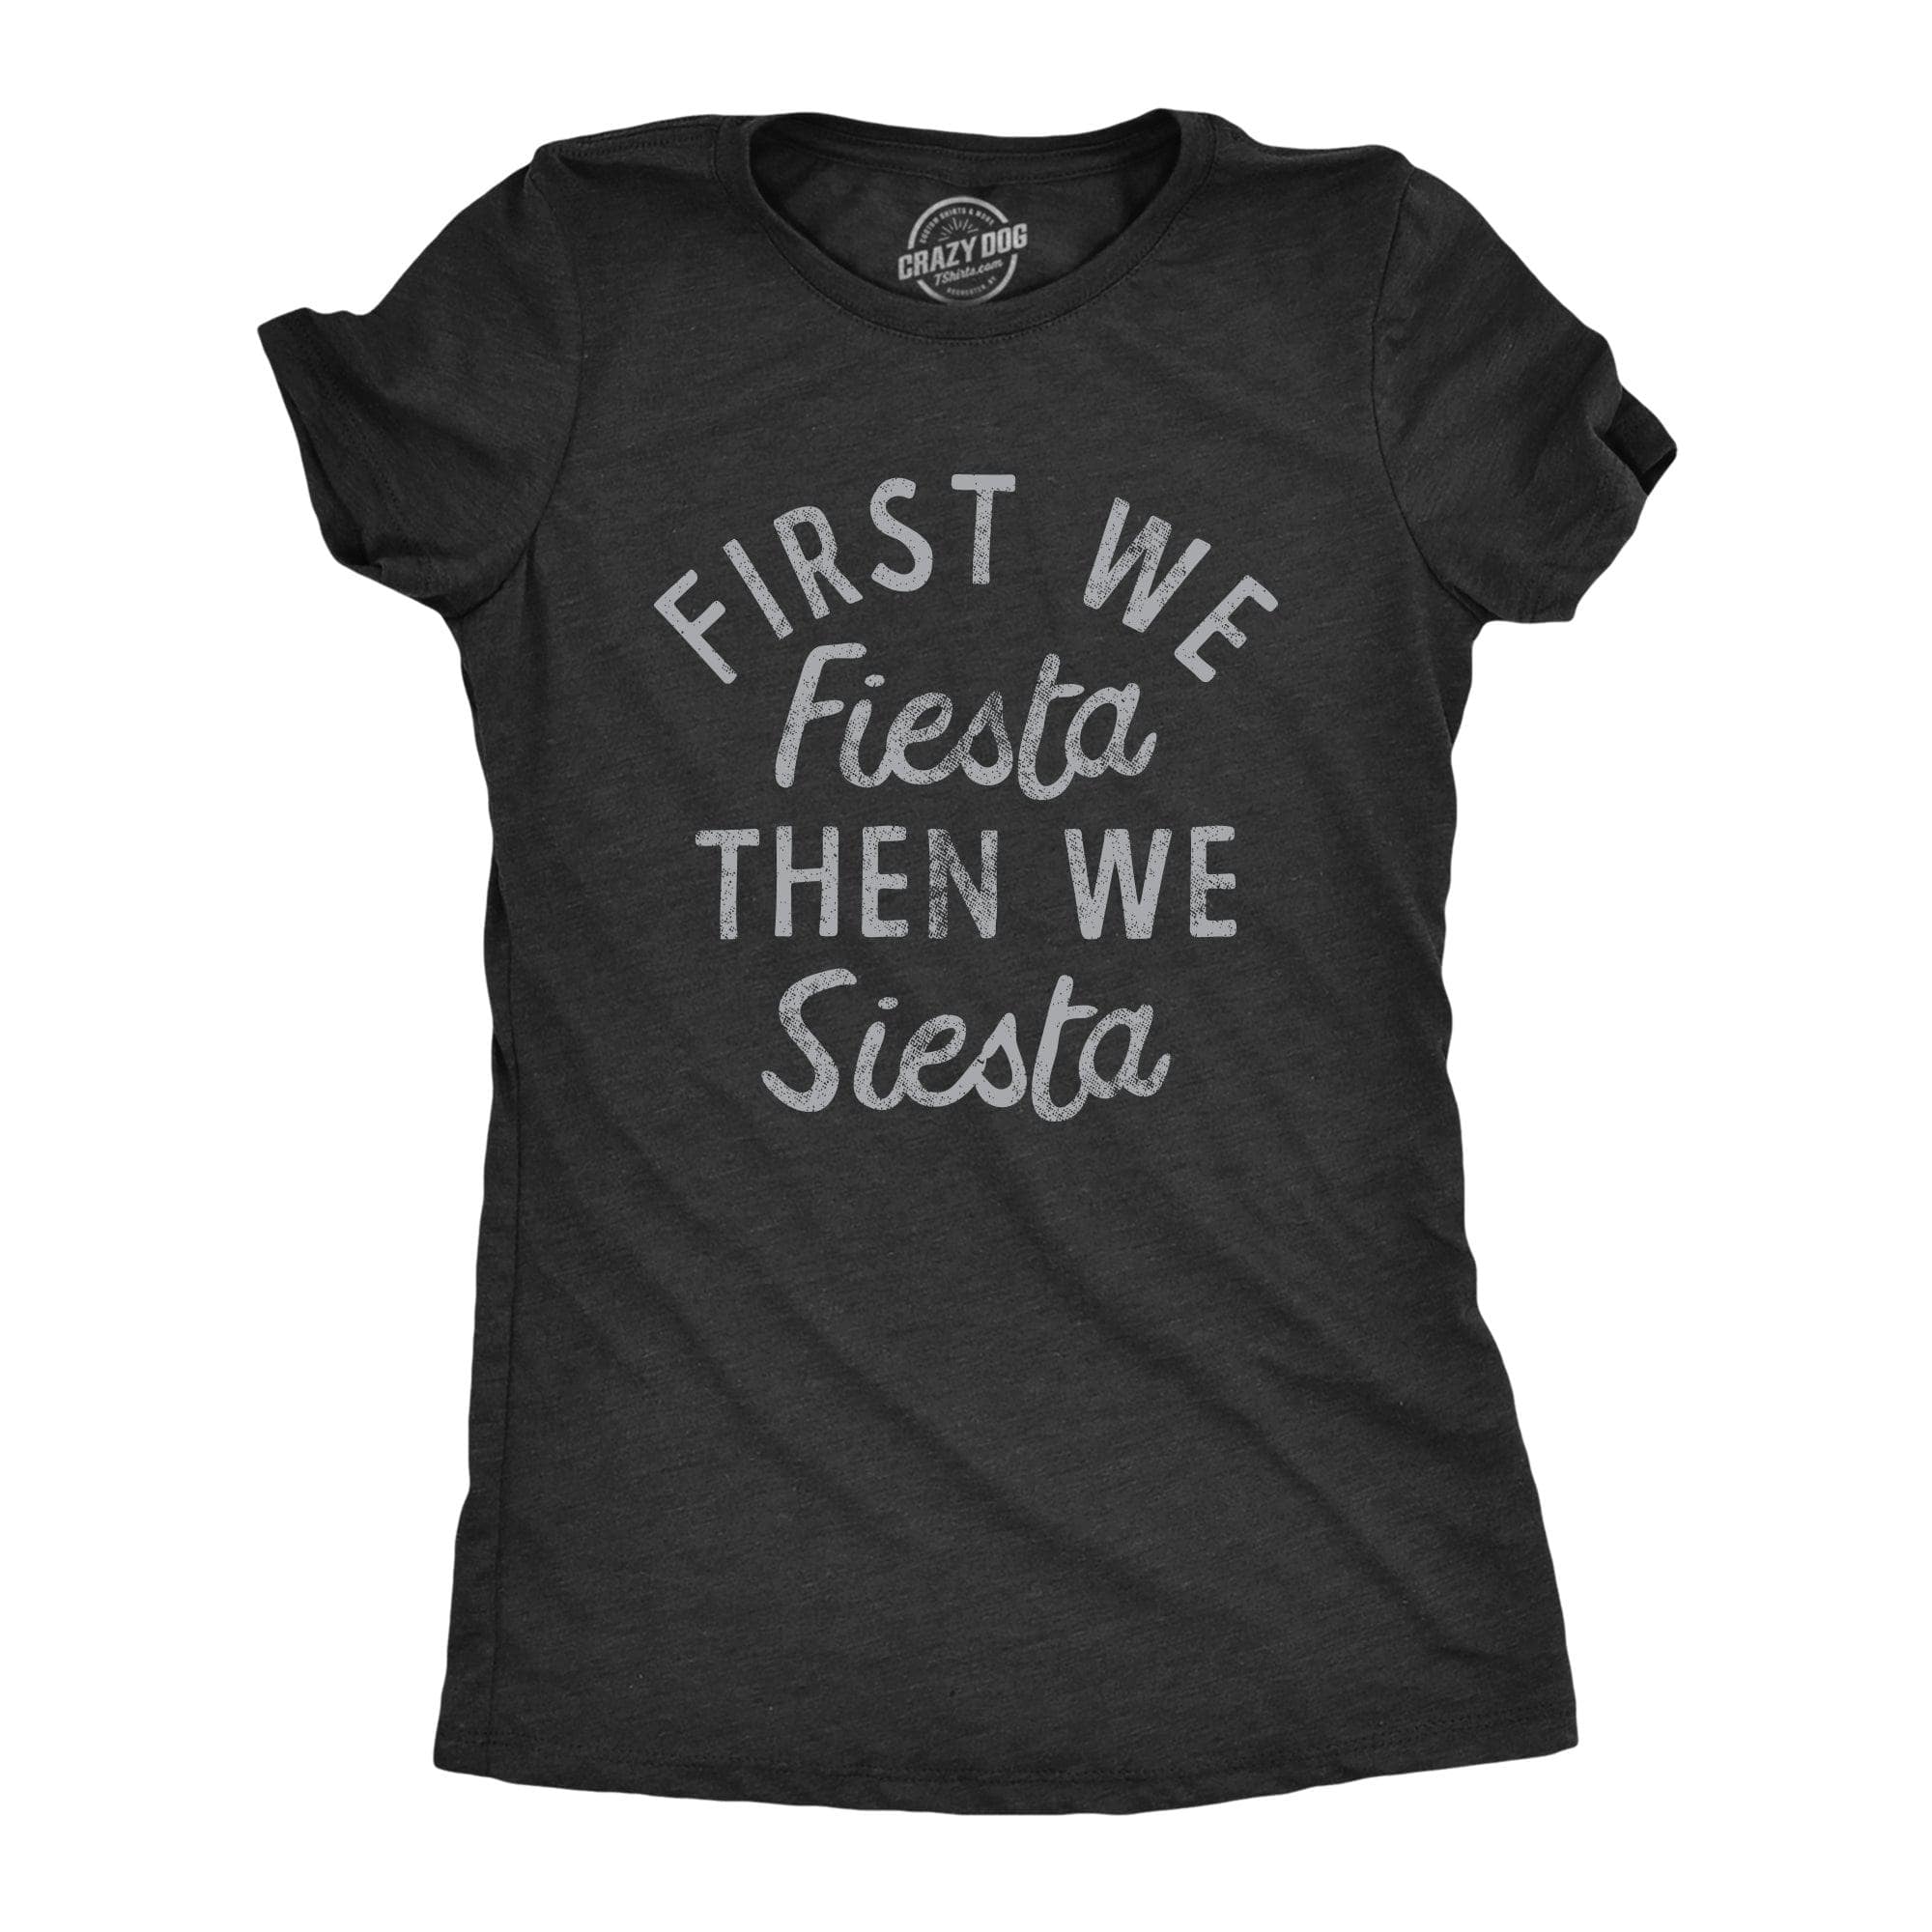 First We Fiesta Then We Siesta Women's Tshirt  -  Crazy Dog T-Shirts